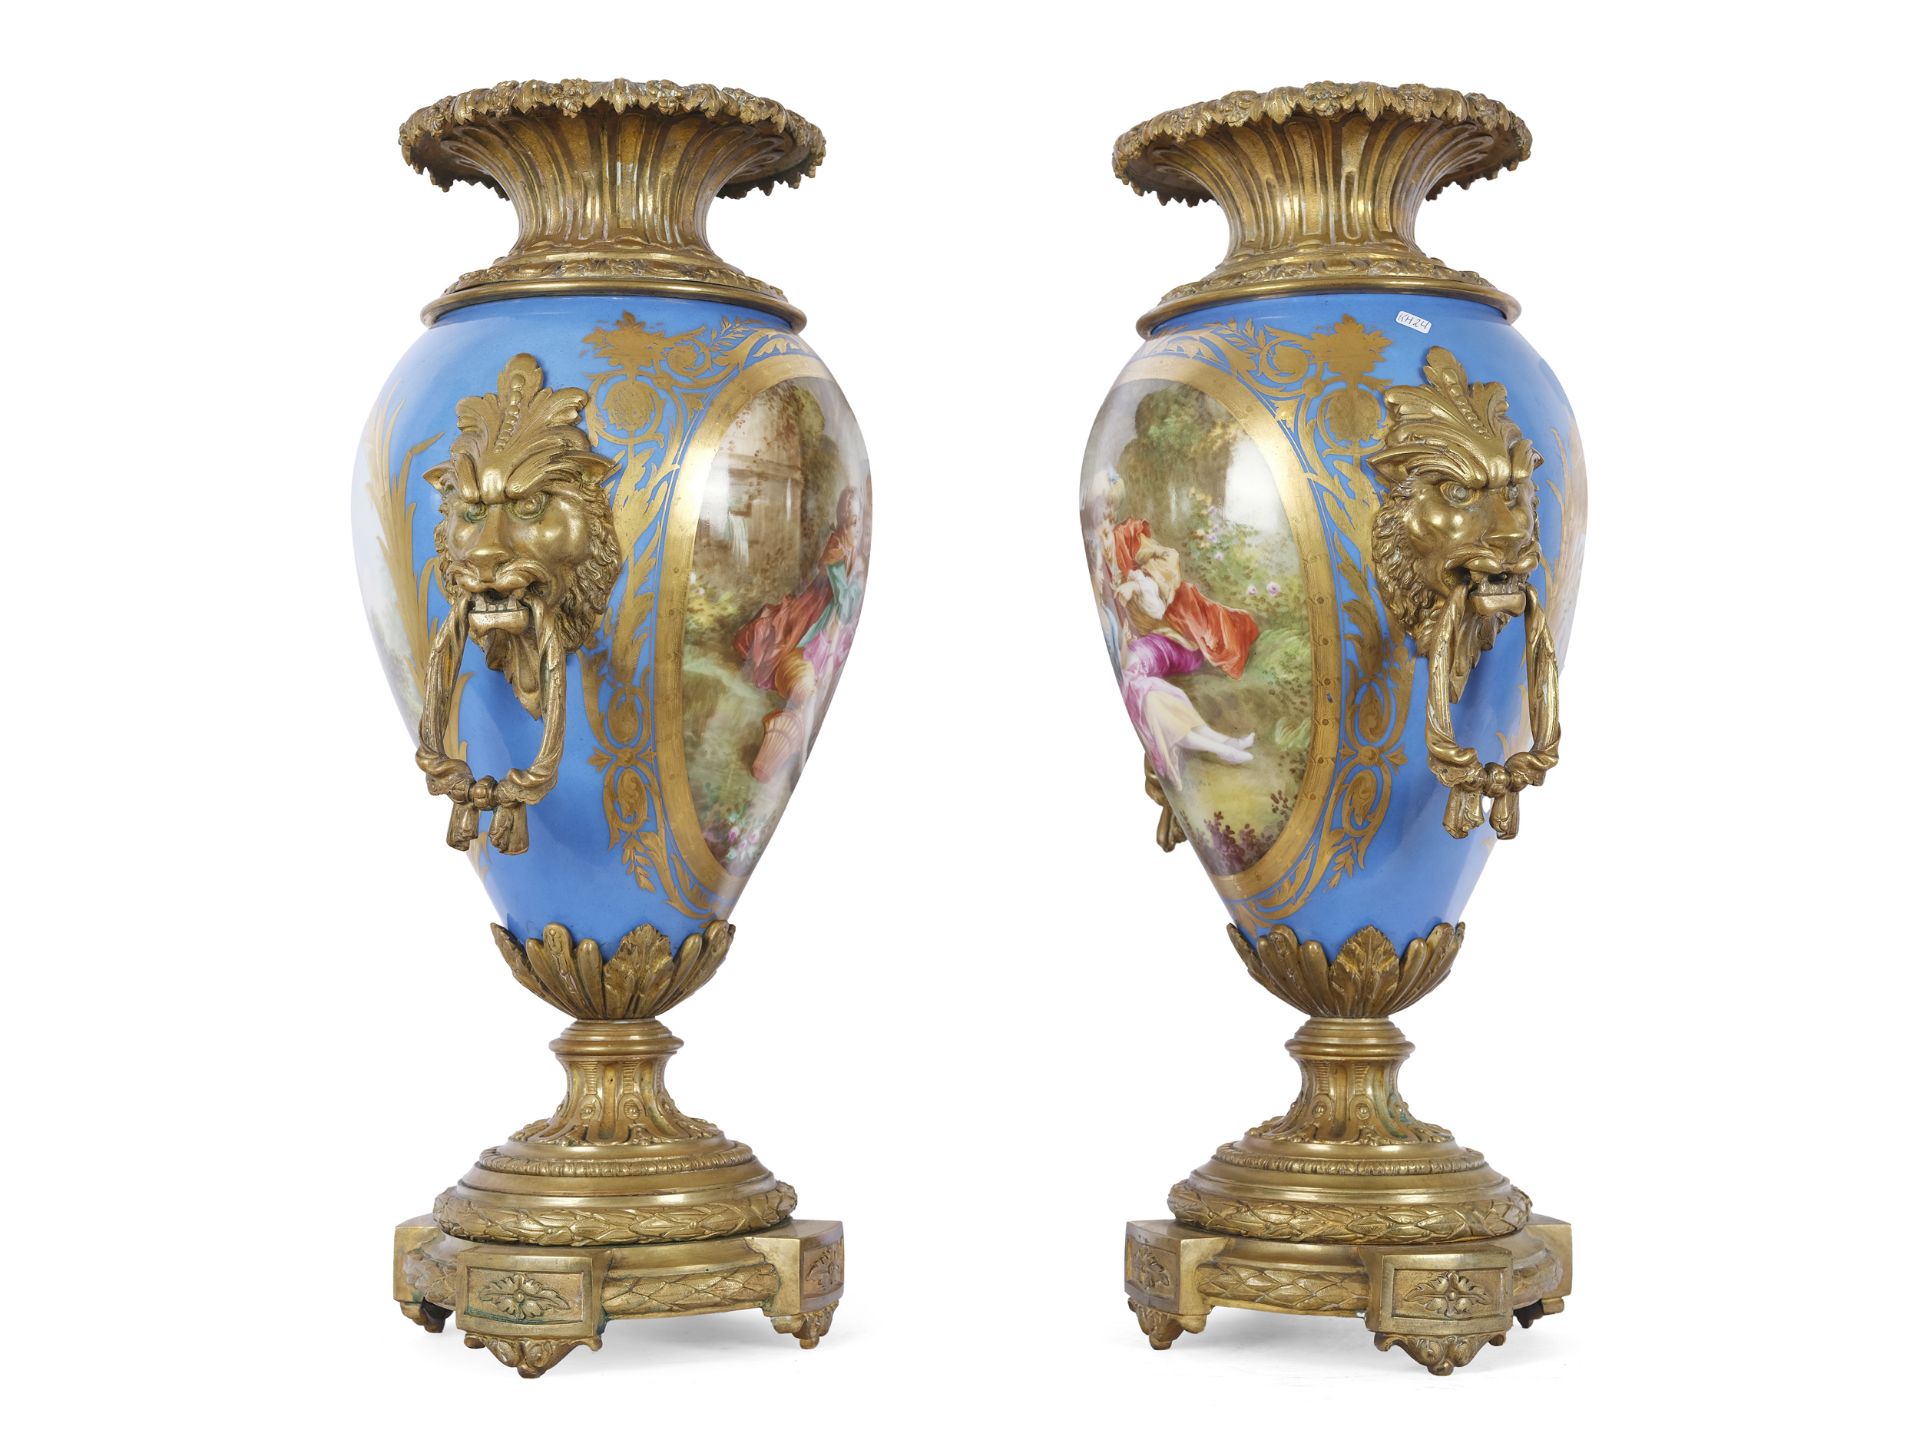 Paar Vasen mit Watteau-Szene, Sèvres, Paris, Mitte 19. Jahrhundert - Bild 2 aus 3